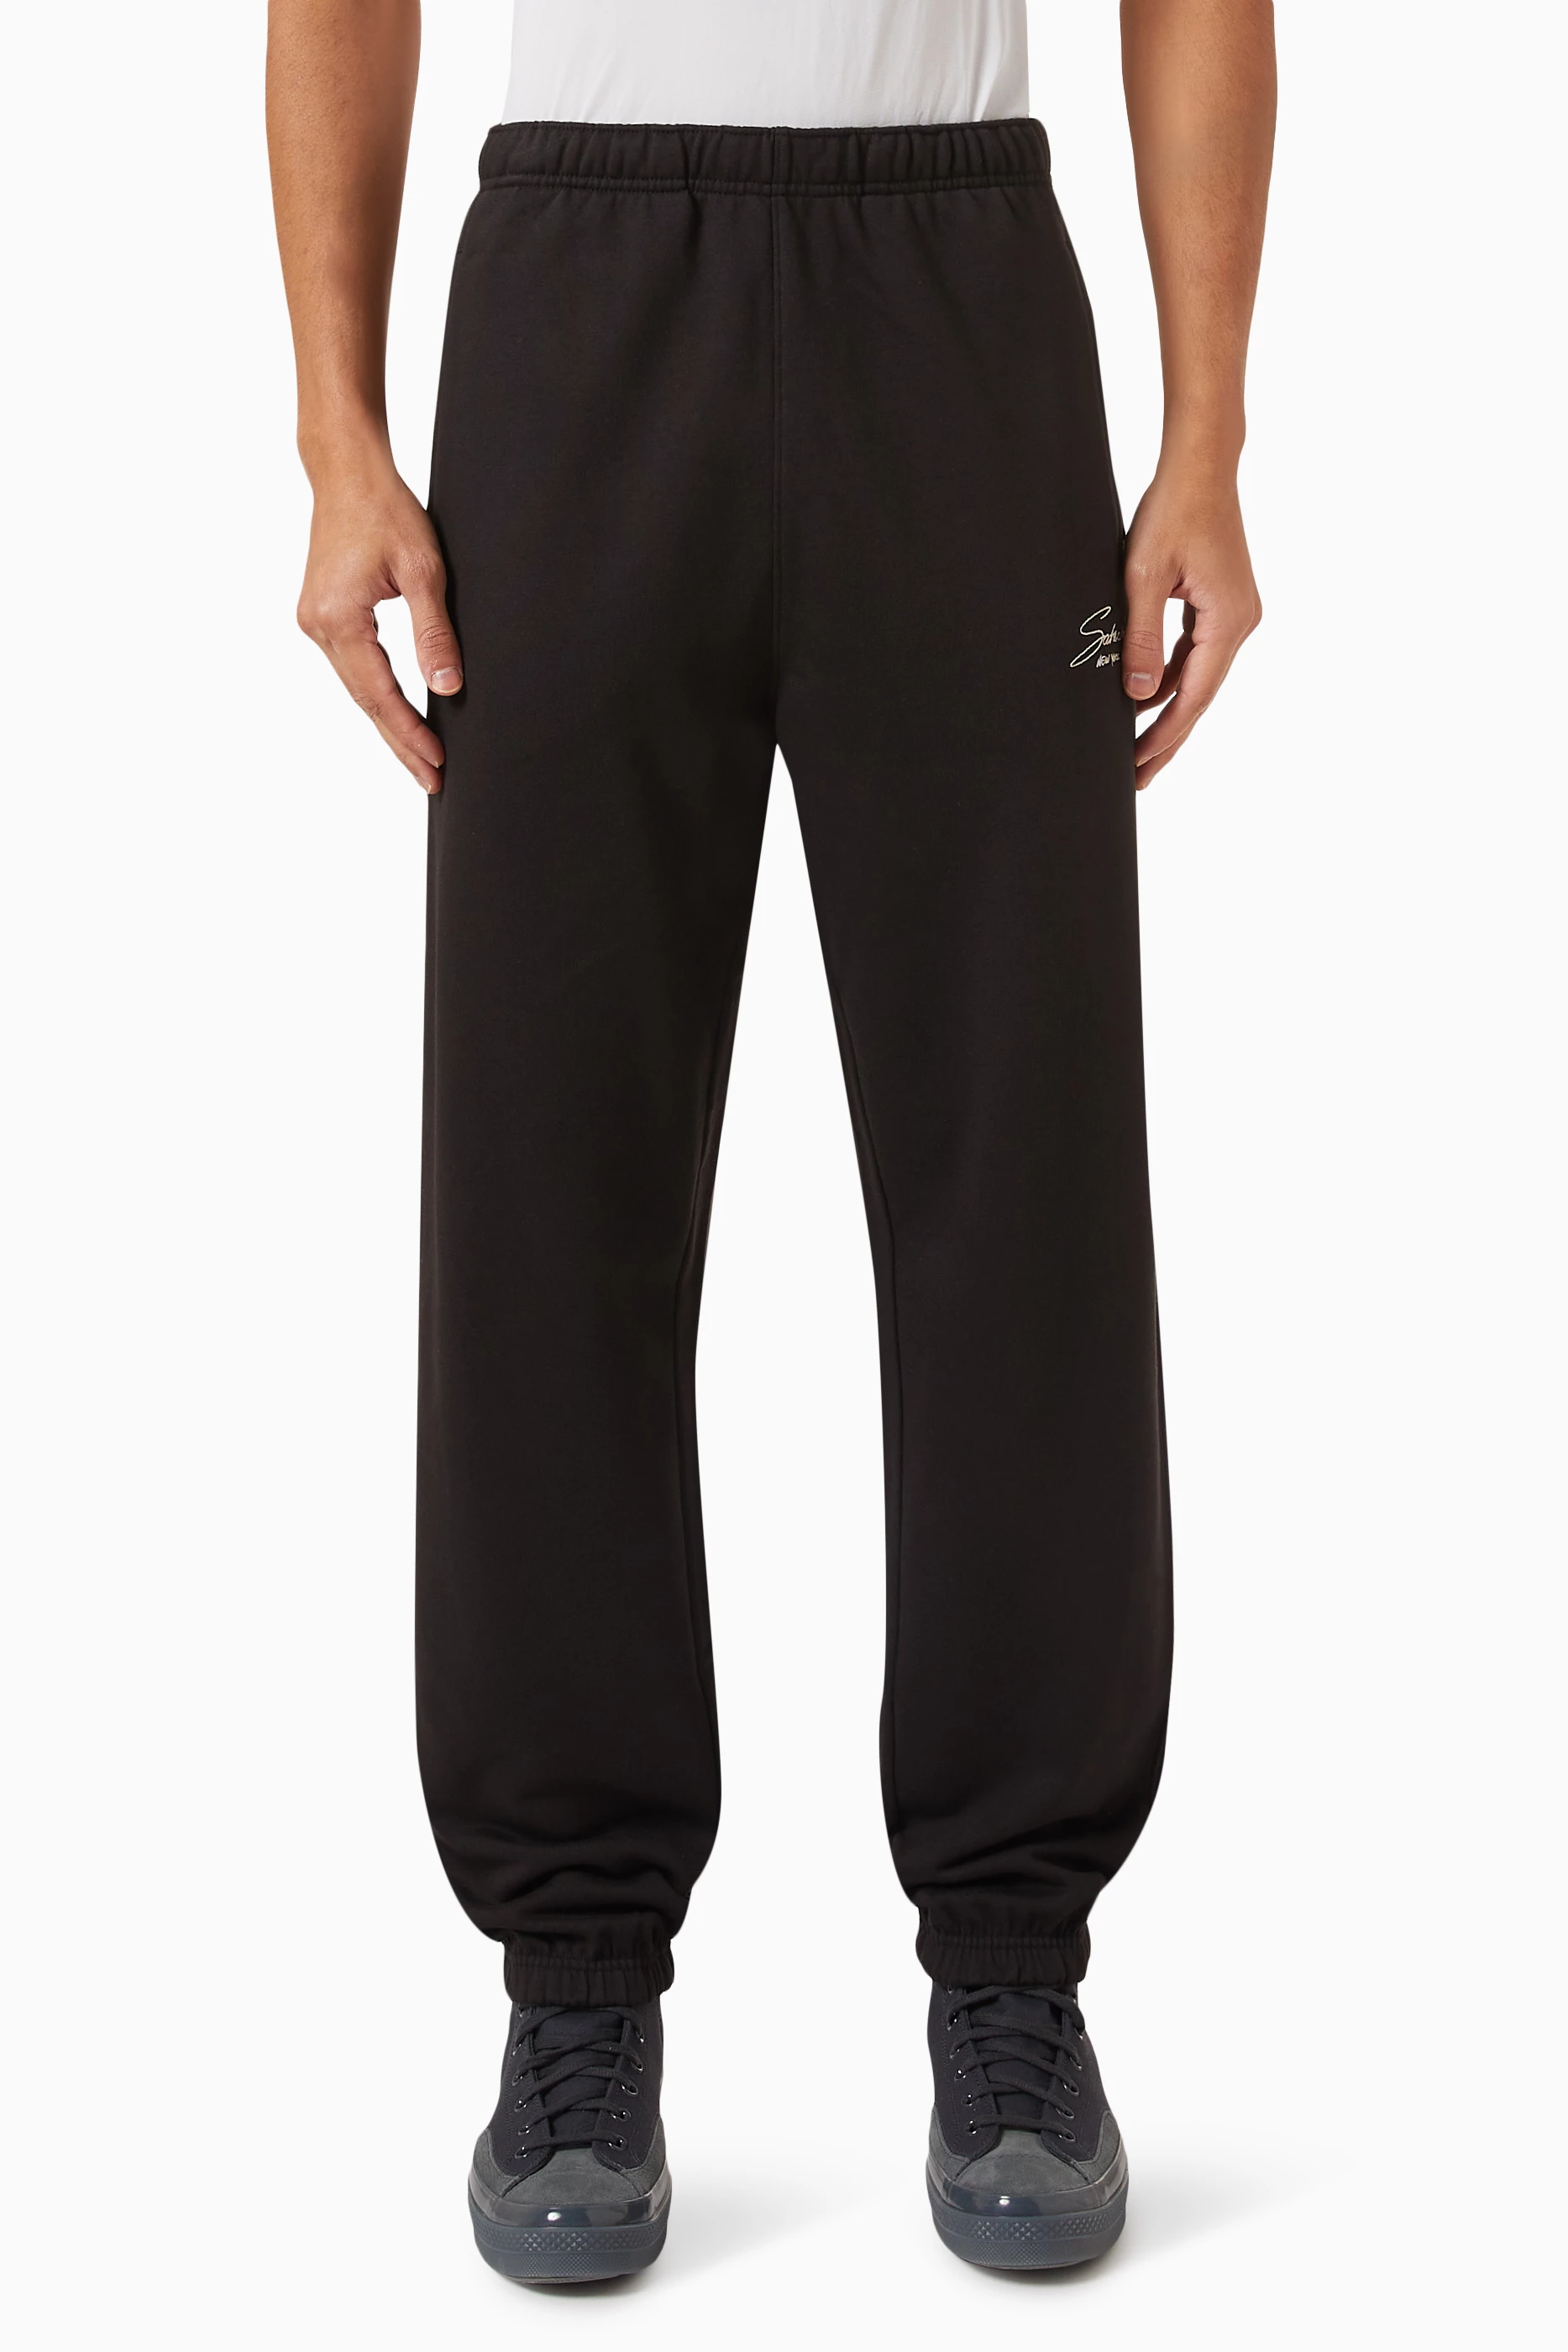 Buy Saturdays NYC Black Abrams Signature Sweatpants in Loopback